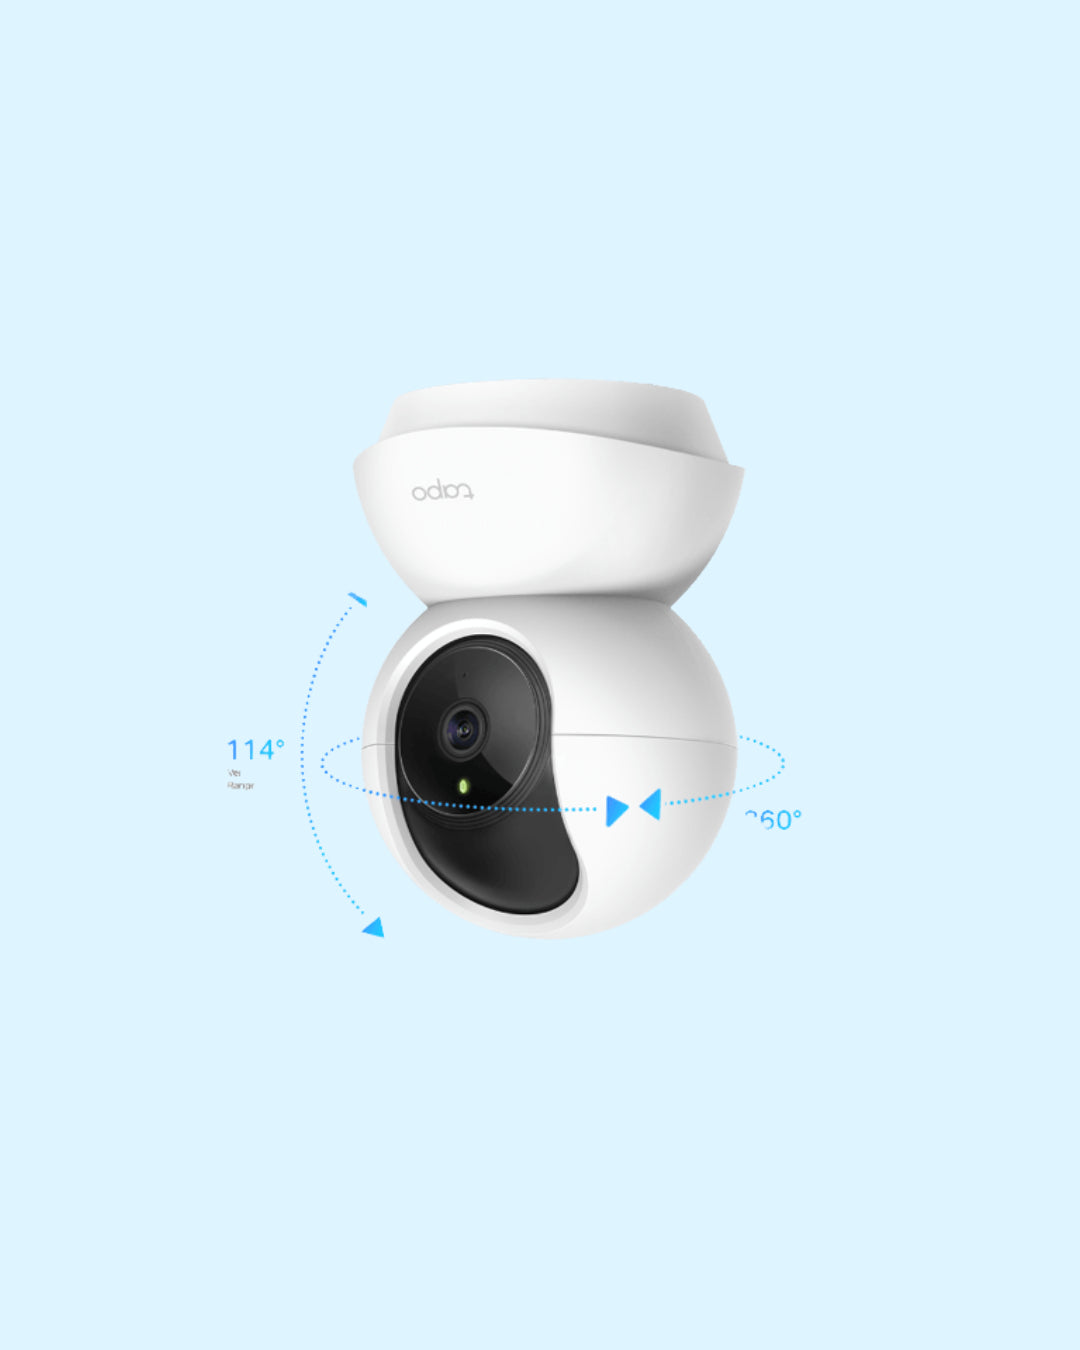 Tapo Pan/Tilt Home Security Wi-Fi Camera